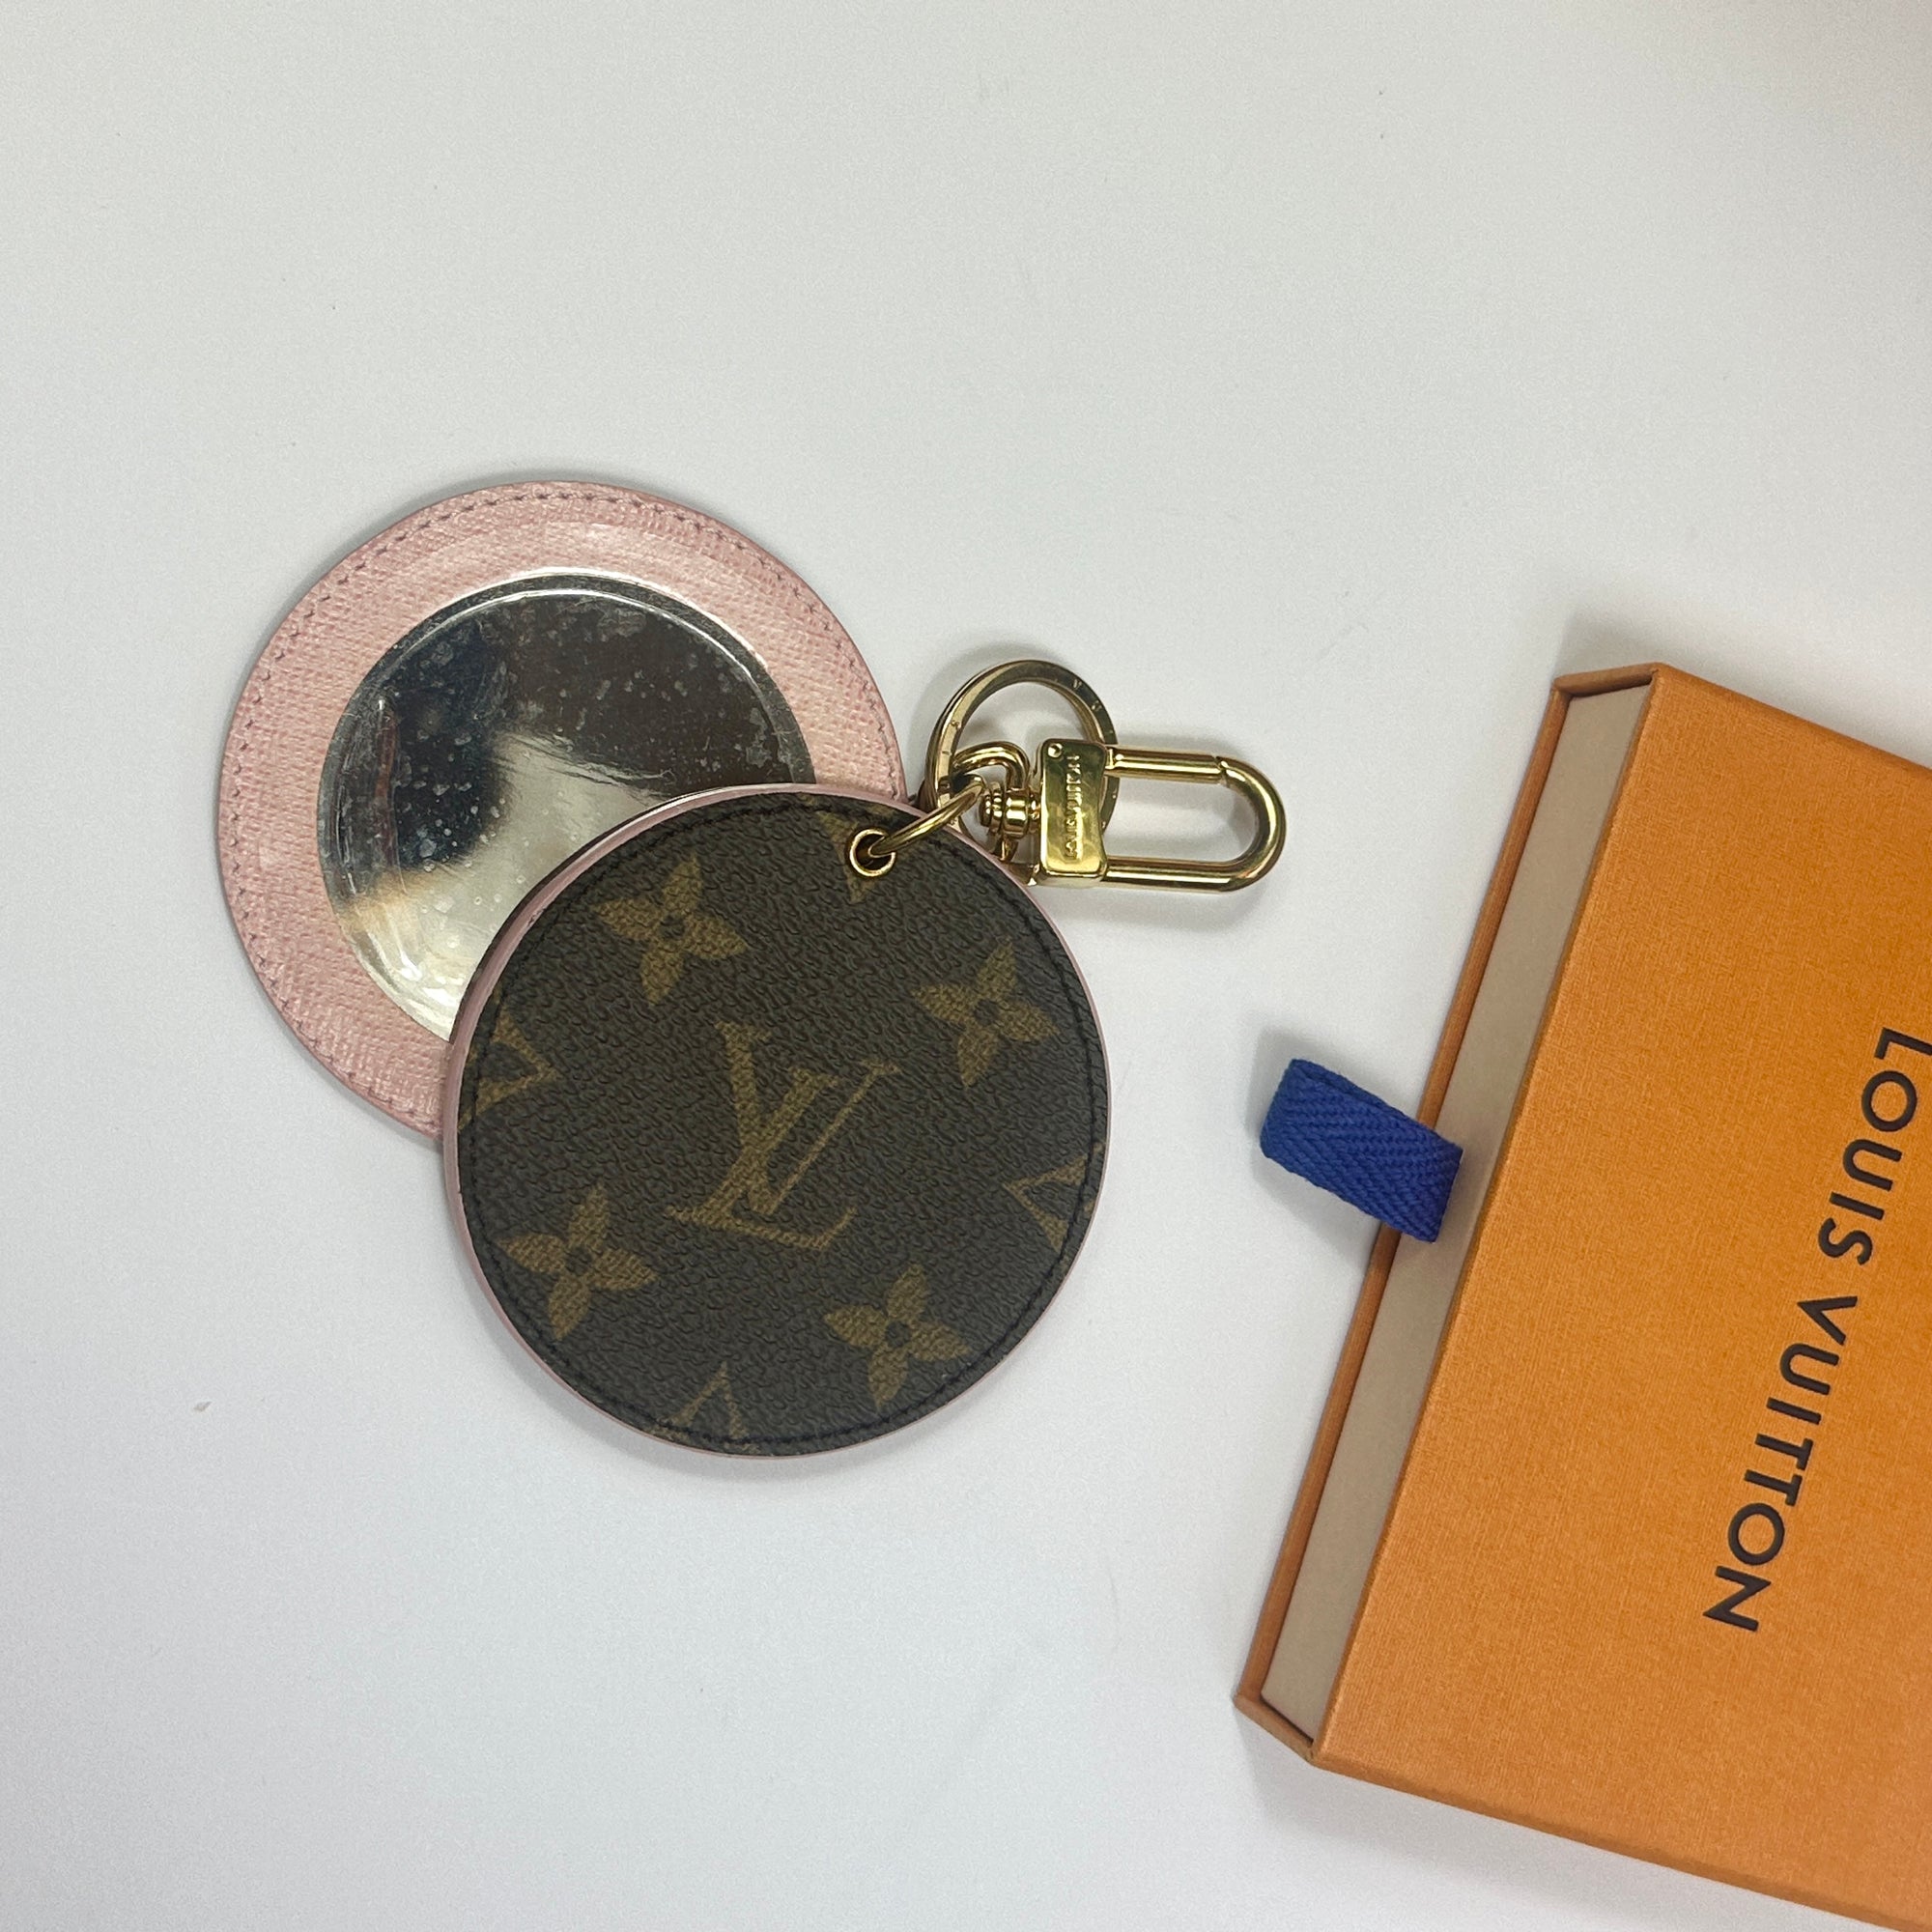 Louis Vuitton Mirror Keychain